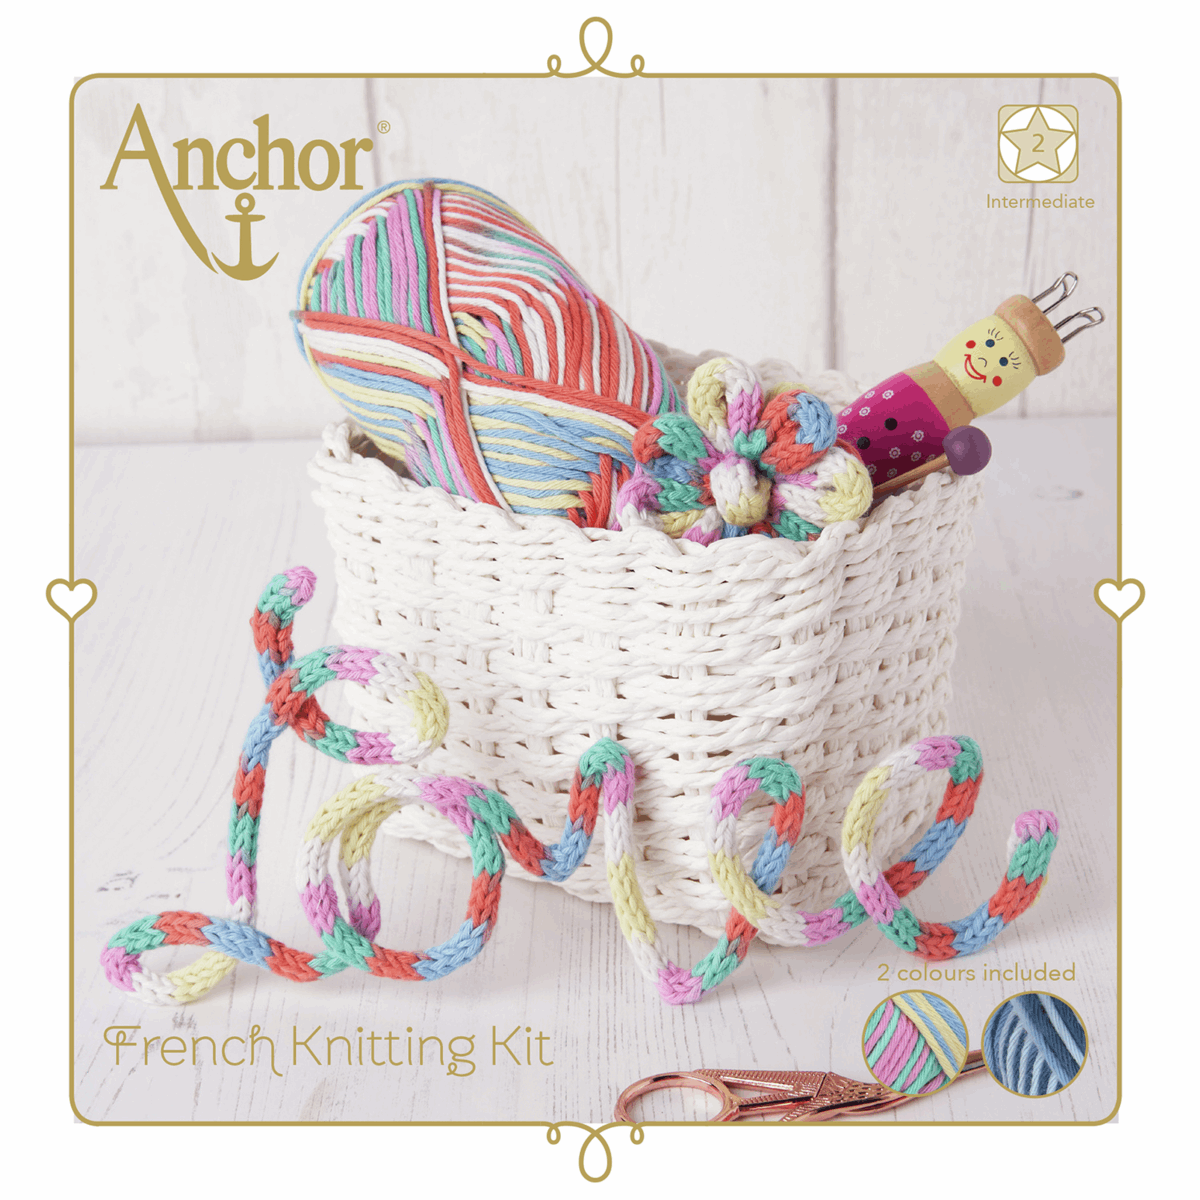 Anchor French Knitting Kit - Pastel